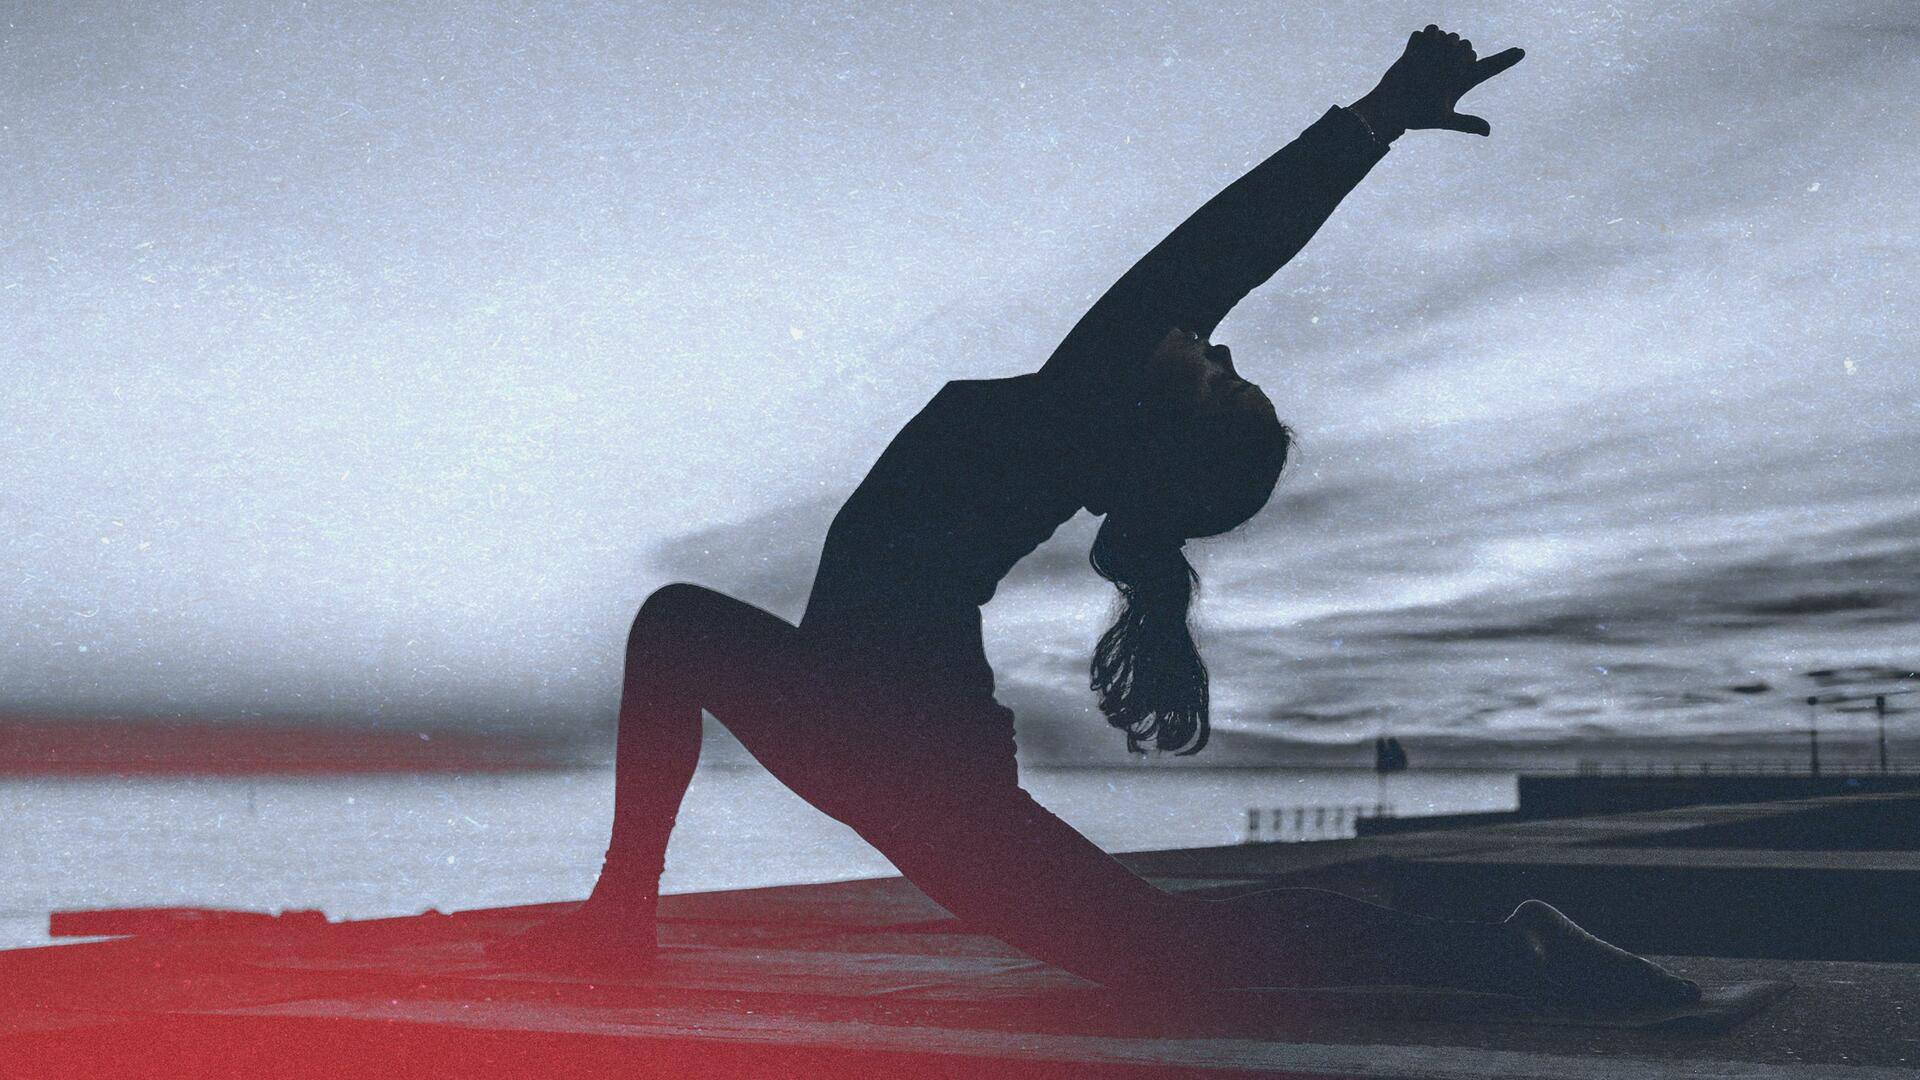 मांसपेशियां बनाने के लिए मददगार हैं ये 5 योगासन, जानें अभ्यास करने का सही तरीका 